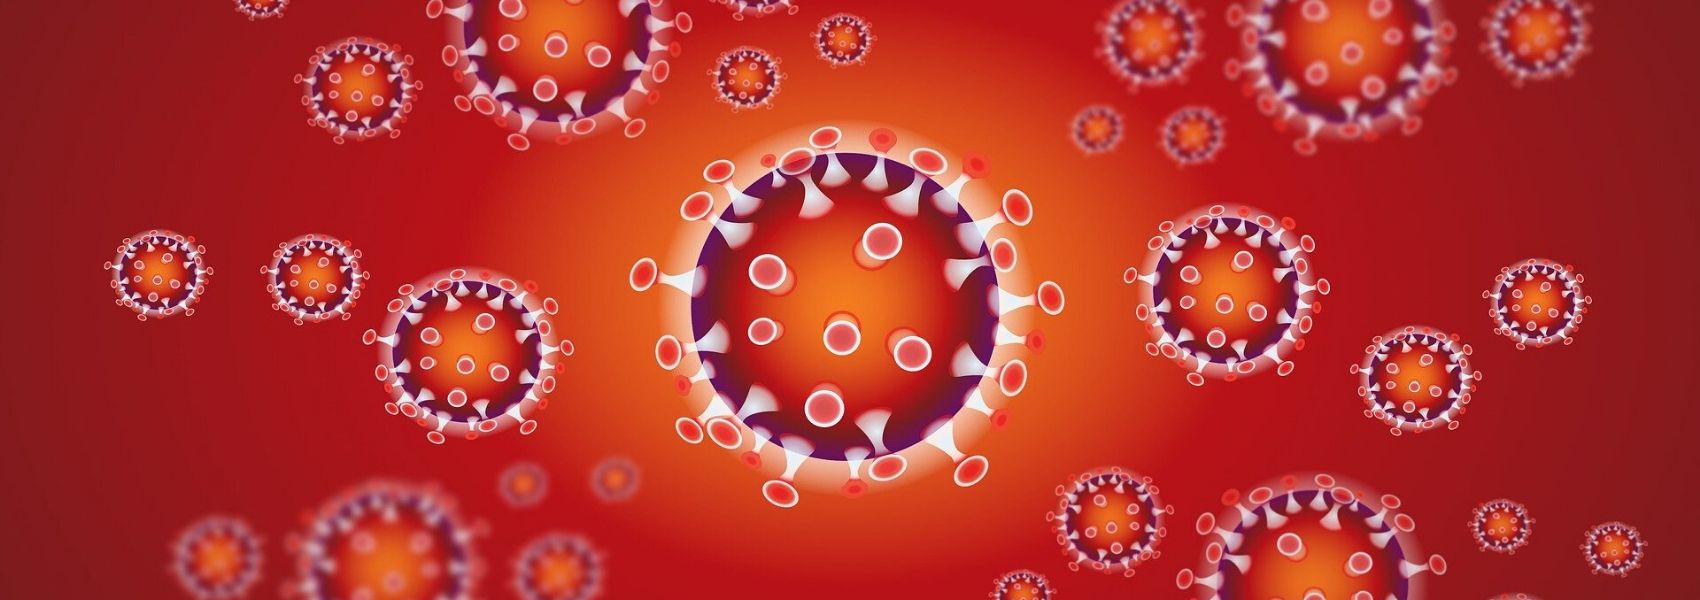 diferebça entre COVID-19 e gripe